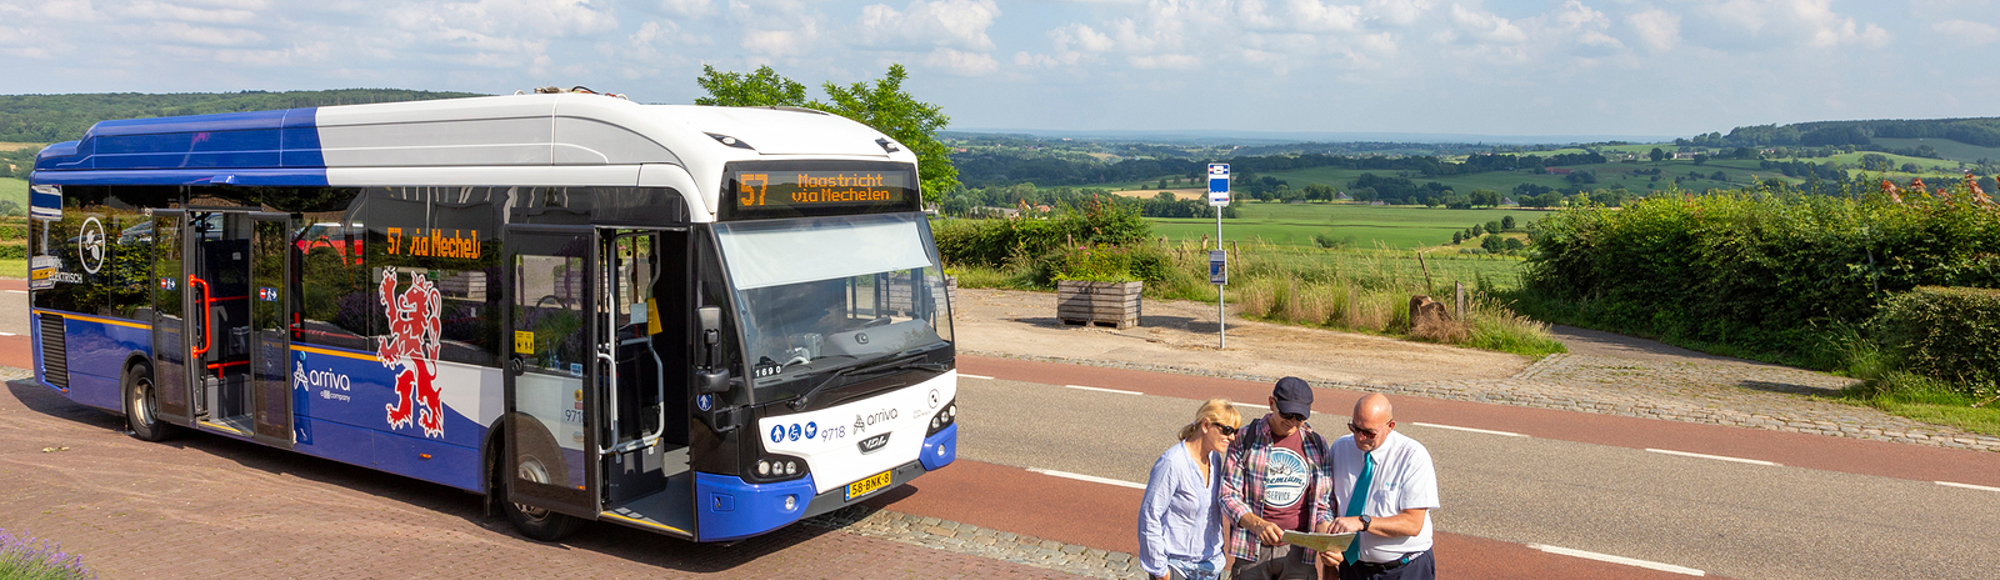 Arriva Bus met toeristen en chauffeur hebben een kaart vast.